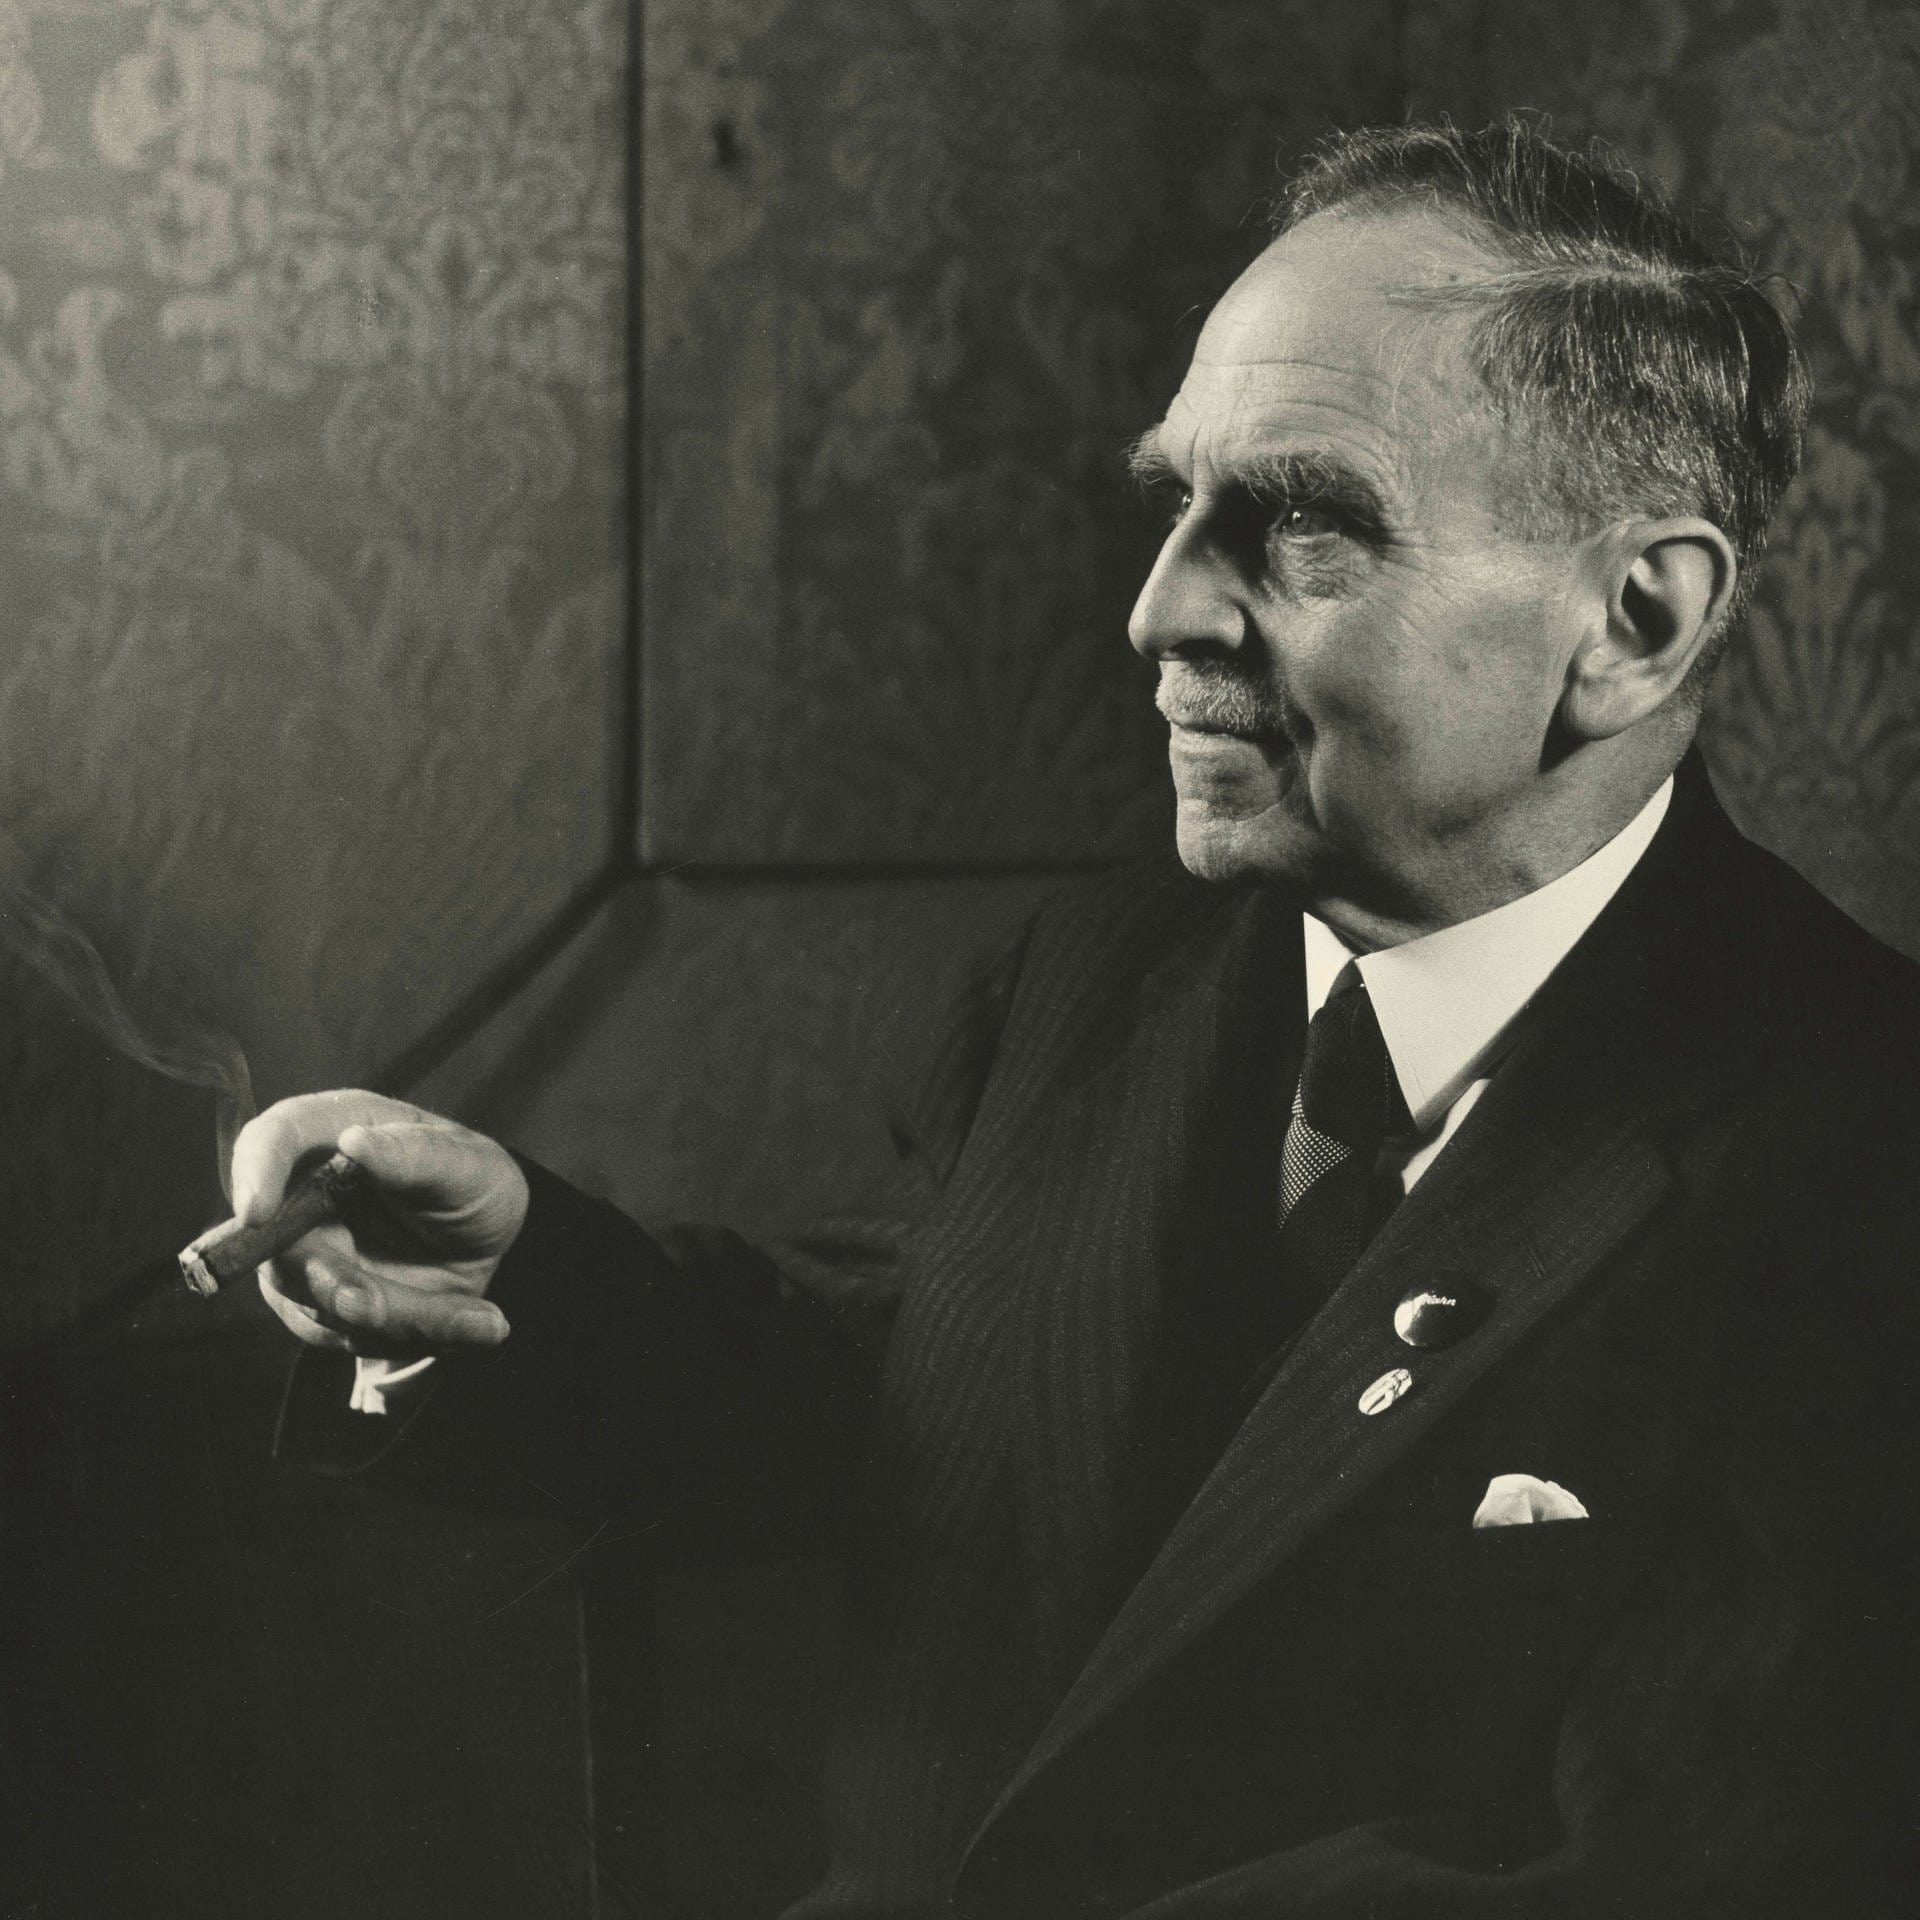 Otto Hahn über die Entdeckung der Kernspaltung | 14.8.1947 | Kernenergie